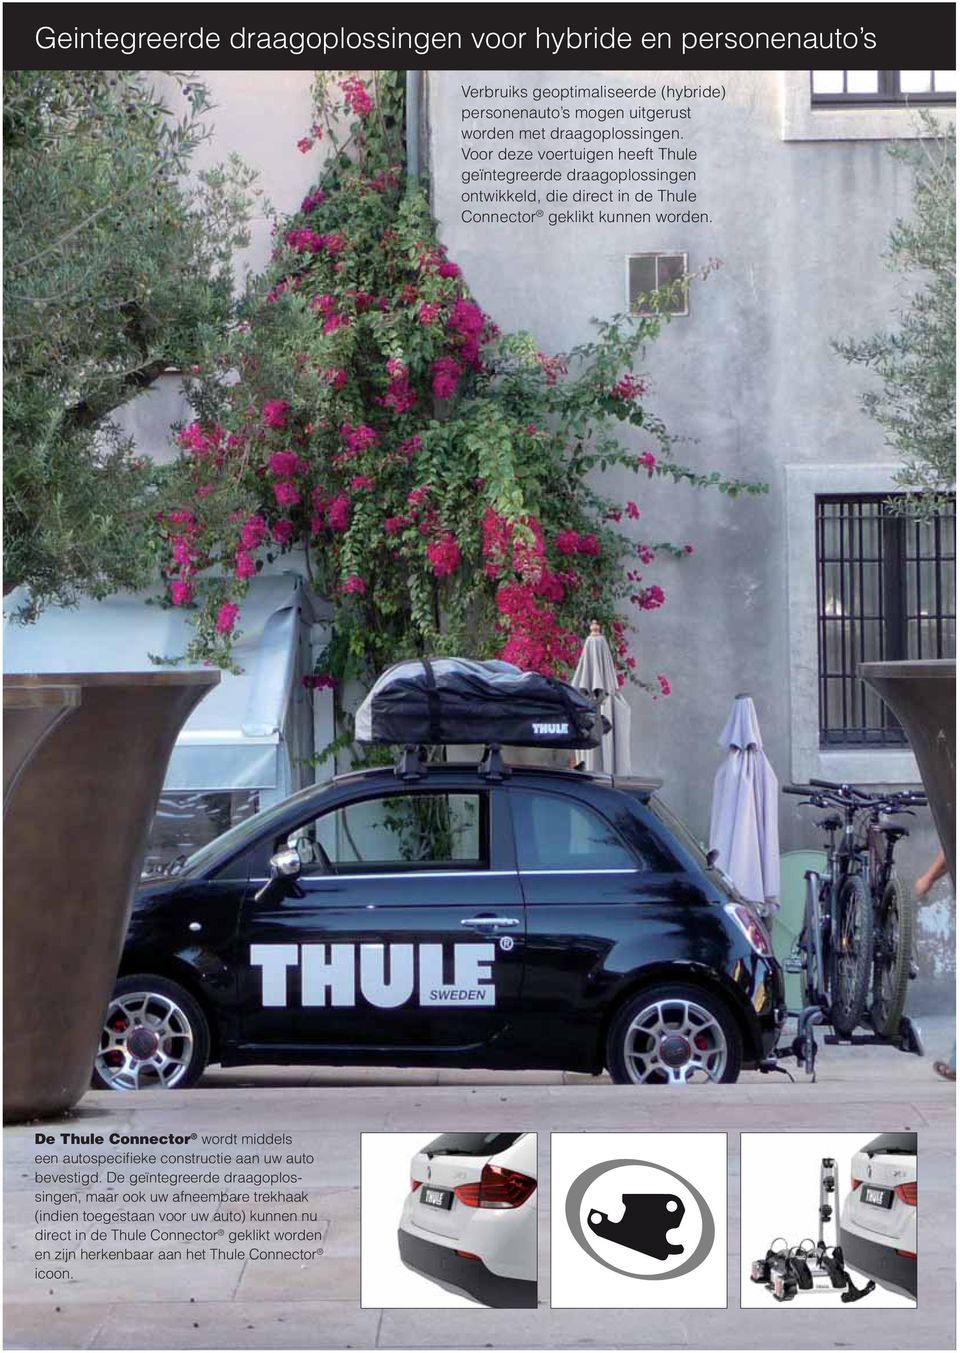 Voor deze voertuigen heeft Thule geïntegreerde draagoplossingen ontwikkeld, die direct in de Thule Connector geklikt kunnen worden.